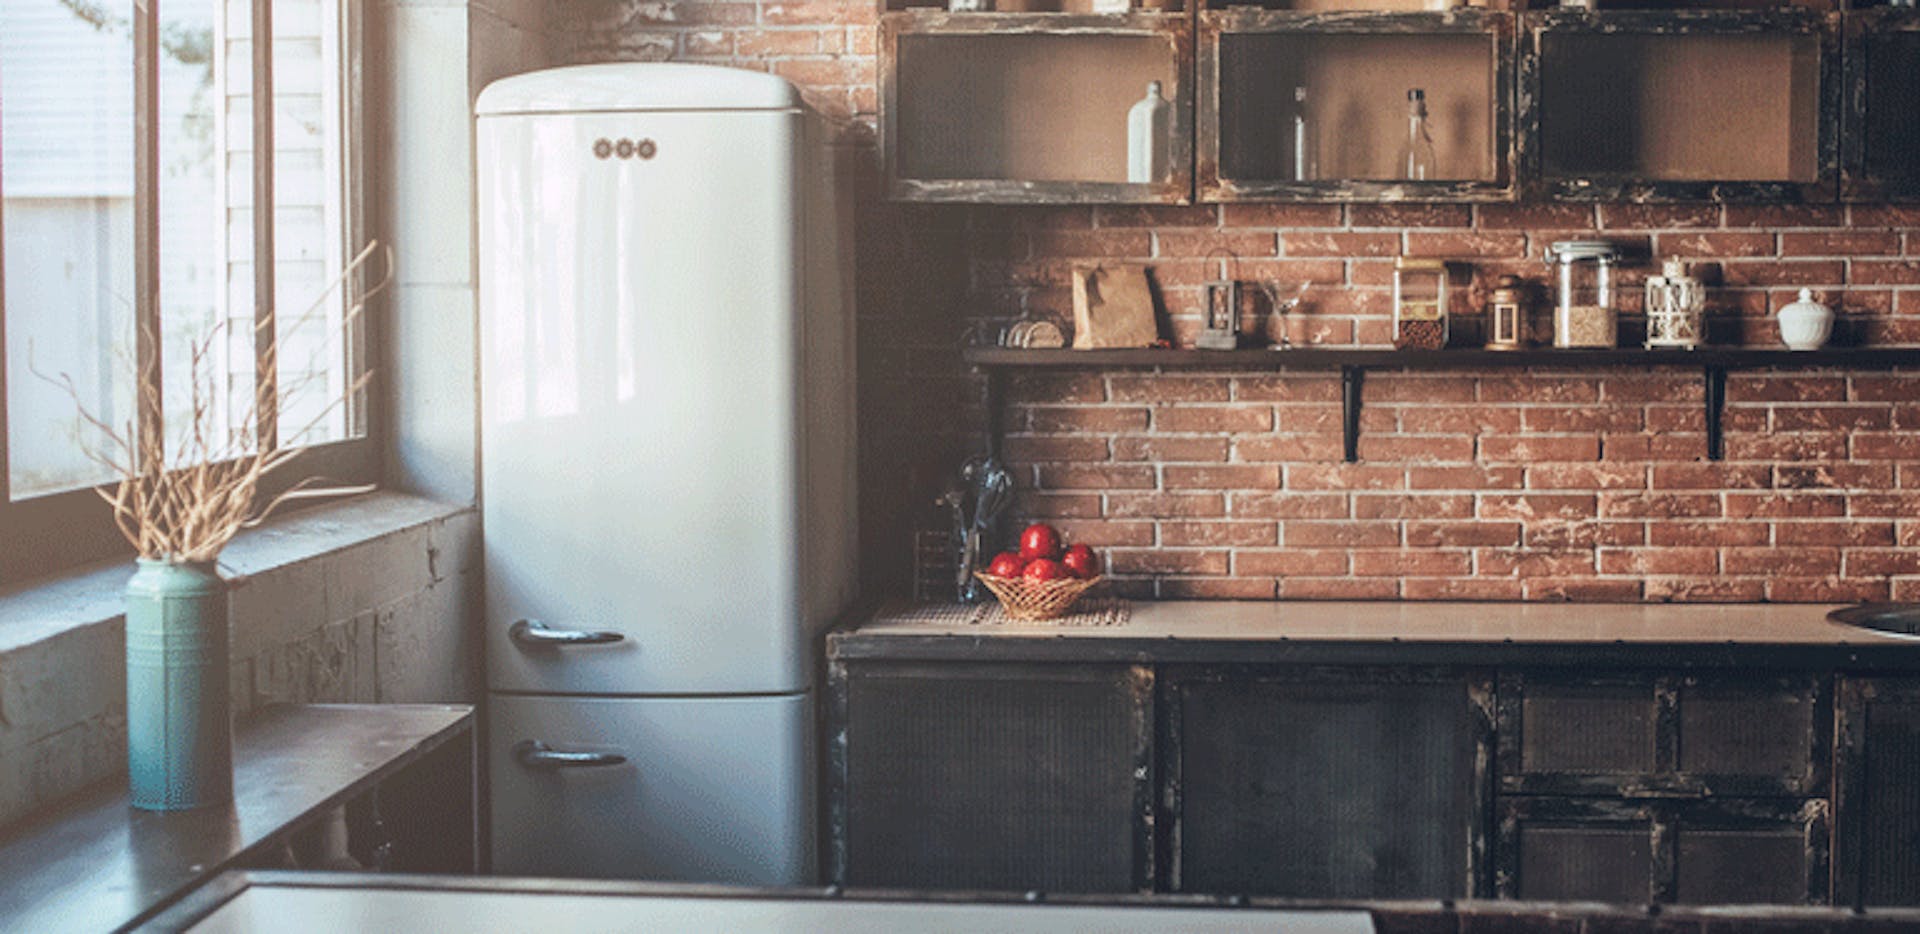 Tout ce qu'il faut savoir sur les réfrigérateurs